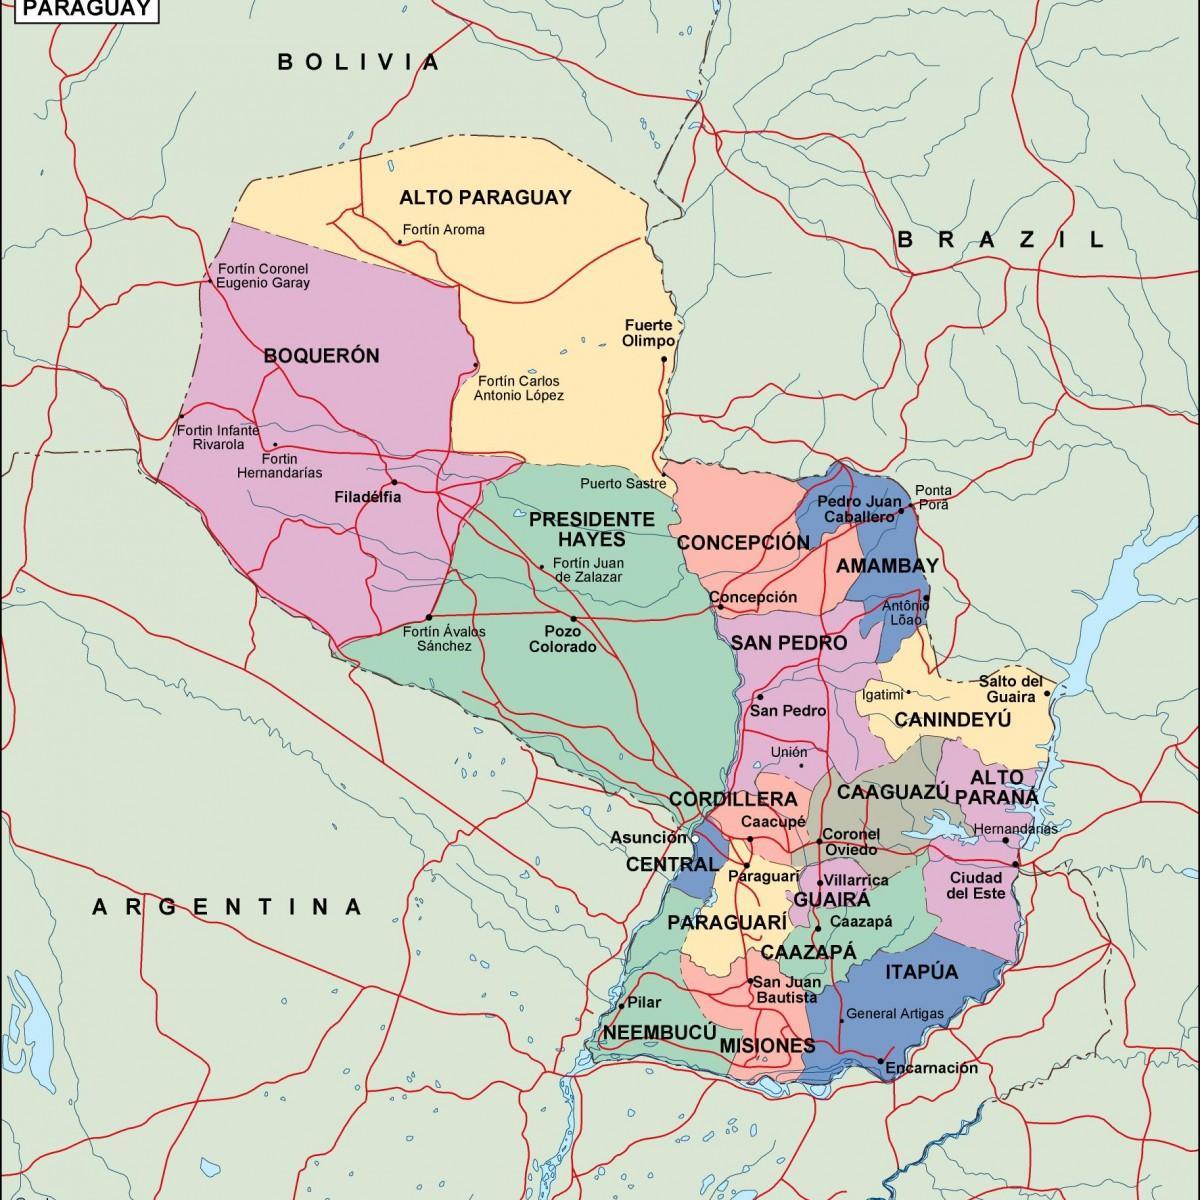 Mapi političkih Paragvaju